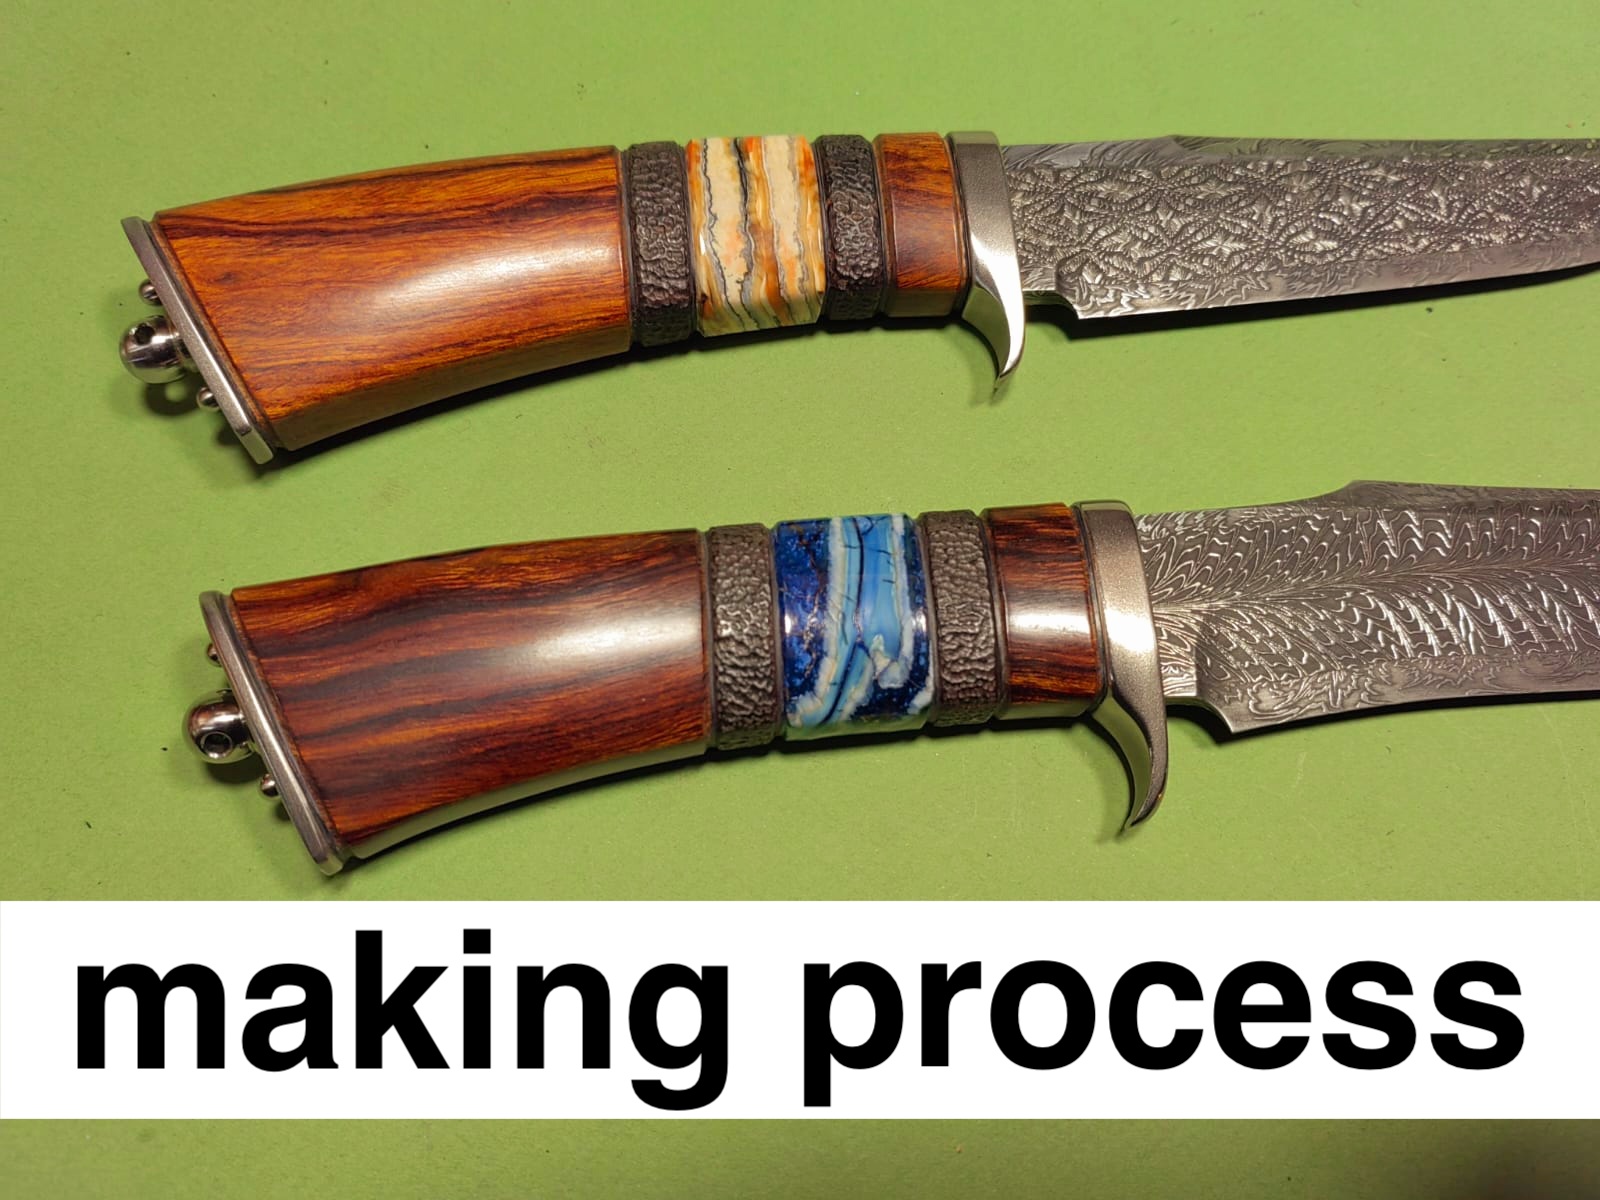 Making a custom knife